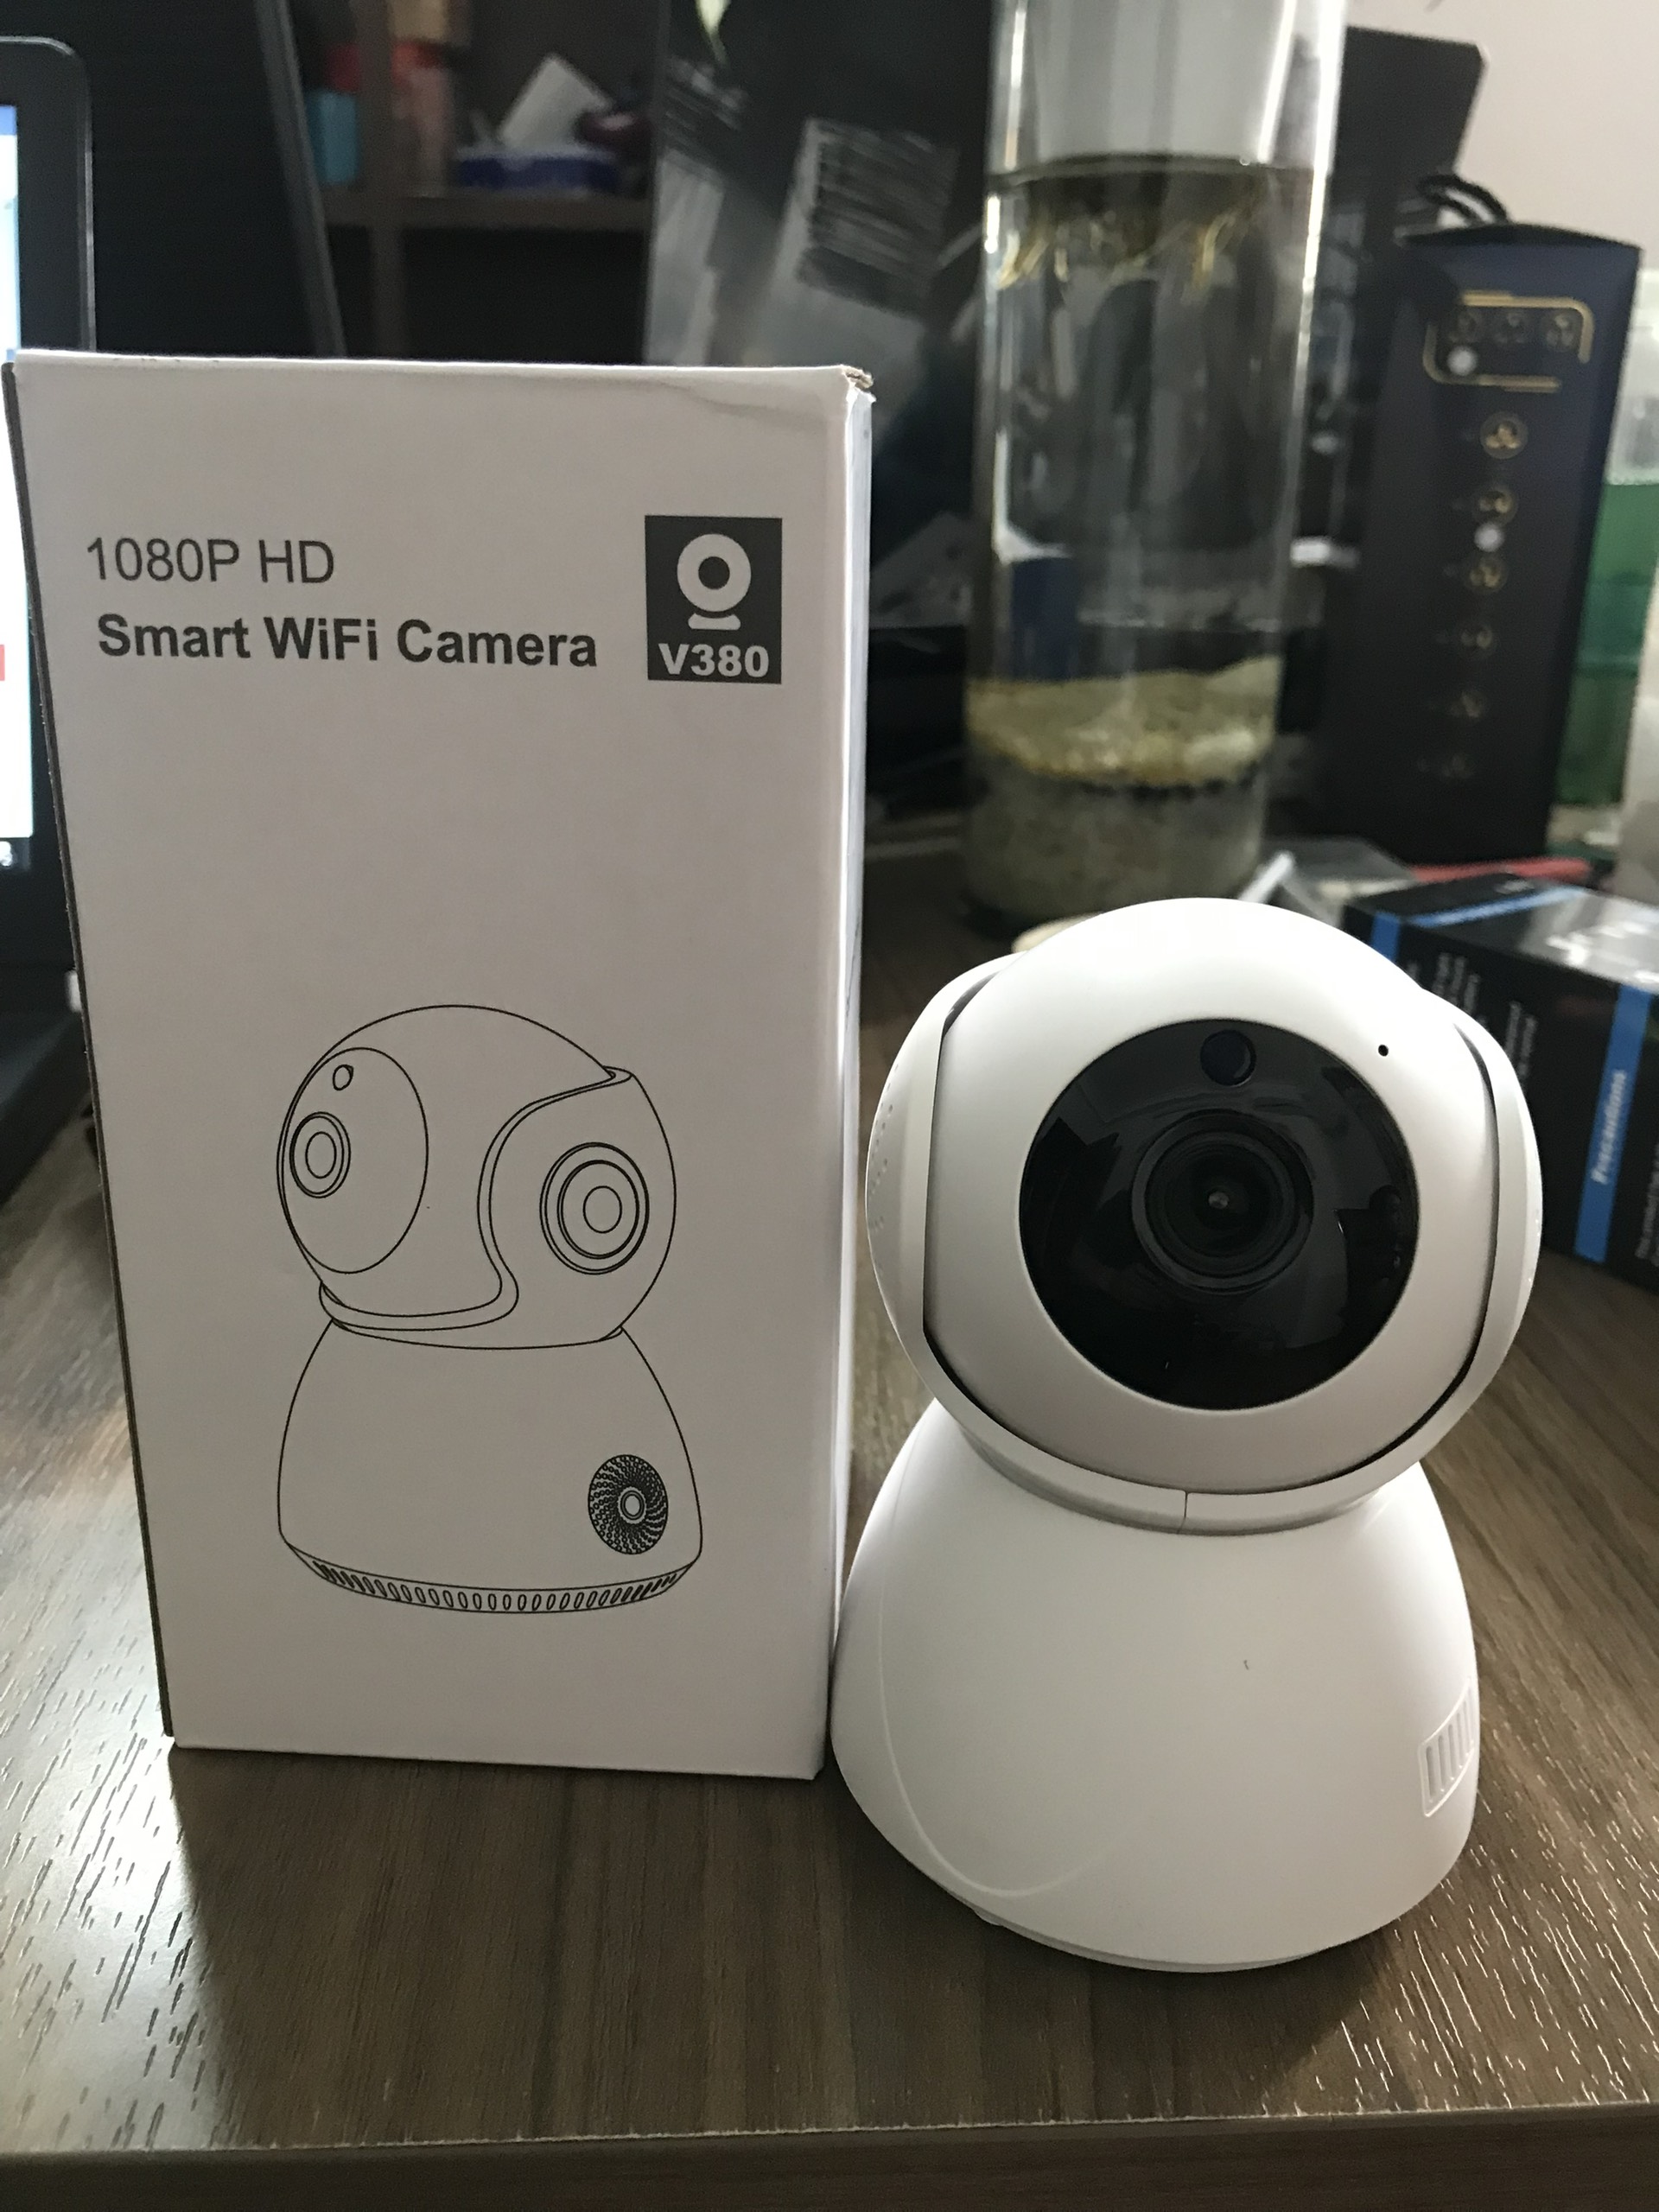 Camera Wifi V380 Pro FULLHD 1080P - Camera Giám Sát - Hồng Ngoại Quay Ban Đêm, Hình Ảnh Sắc Nét...